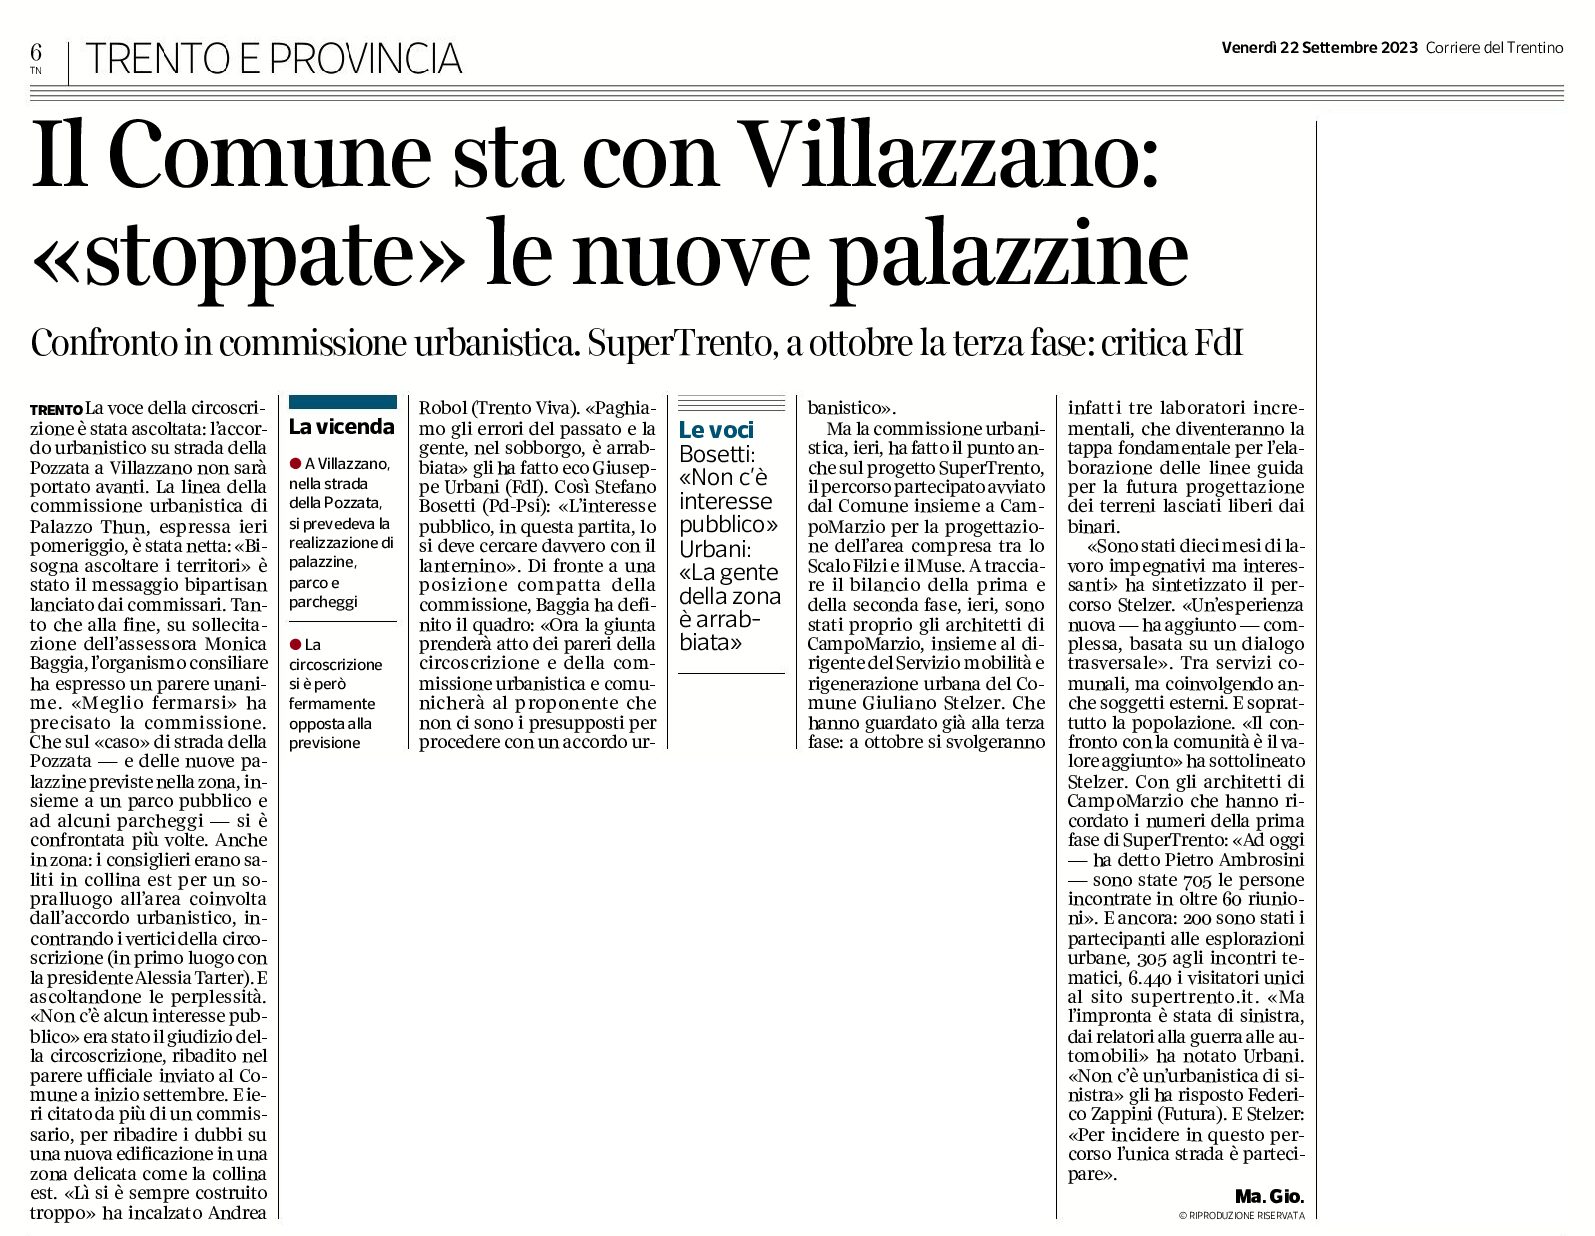 Trento: il Comune stà con Villazzano, “stoppate” le nuove palazzine